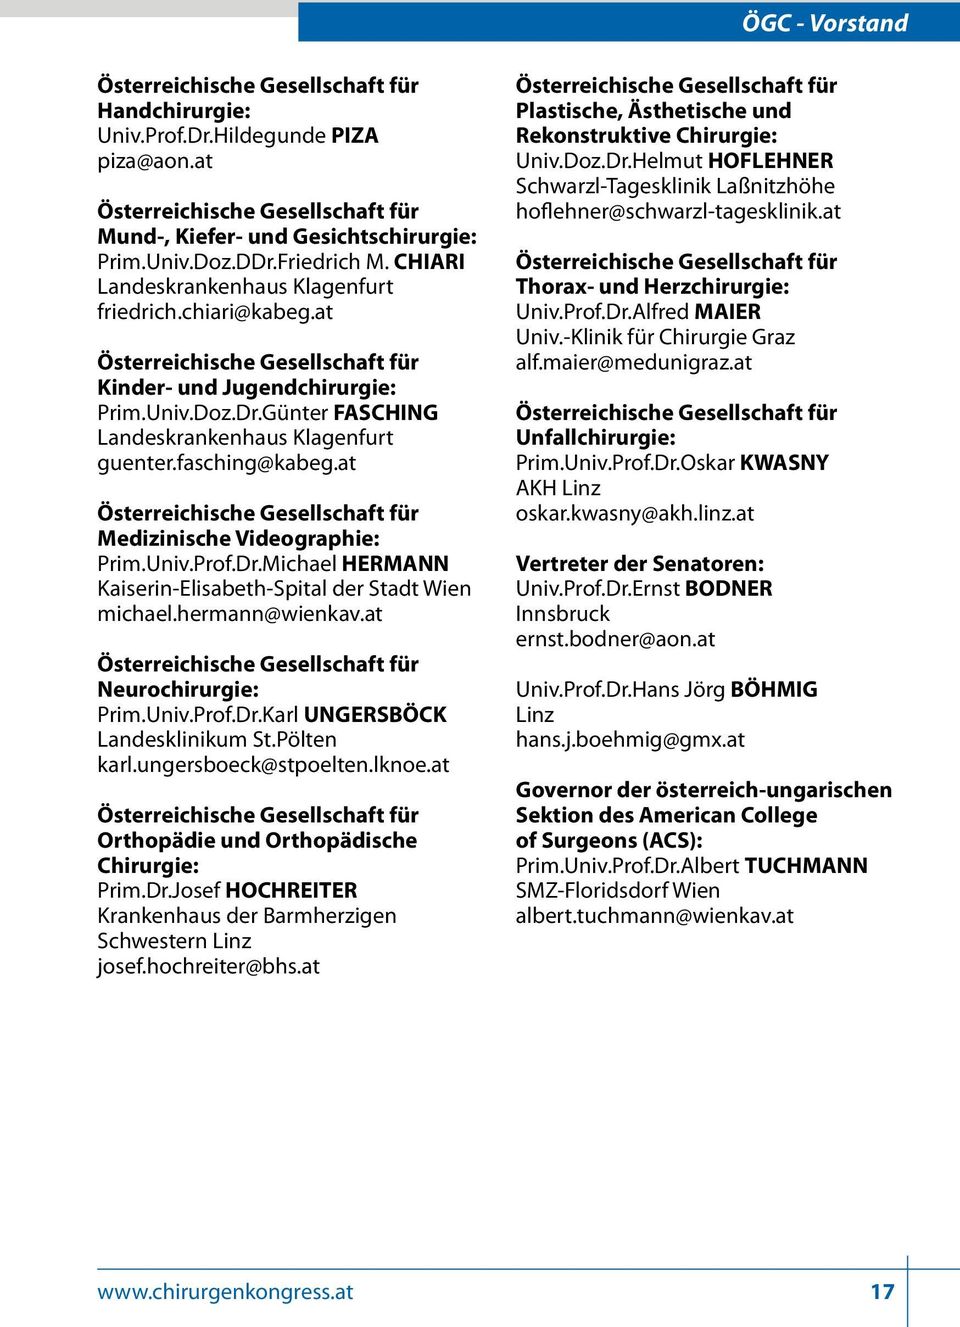 Günter FASCHING Landeskrankenhaus Klagenfurt guenter.fasching@kabeg.at Österreichische Gesellschaft für Medizinische Videographie: Prim.Univ.Prof.Dr.